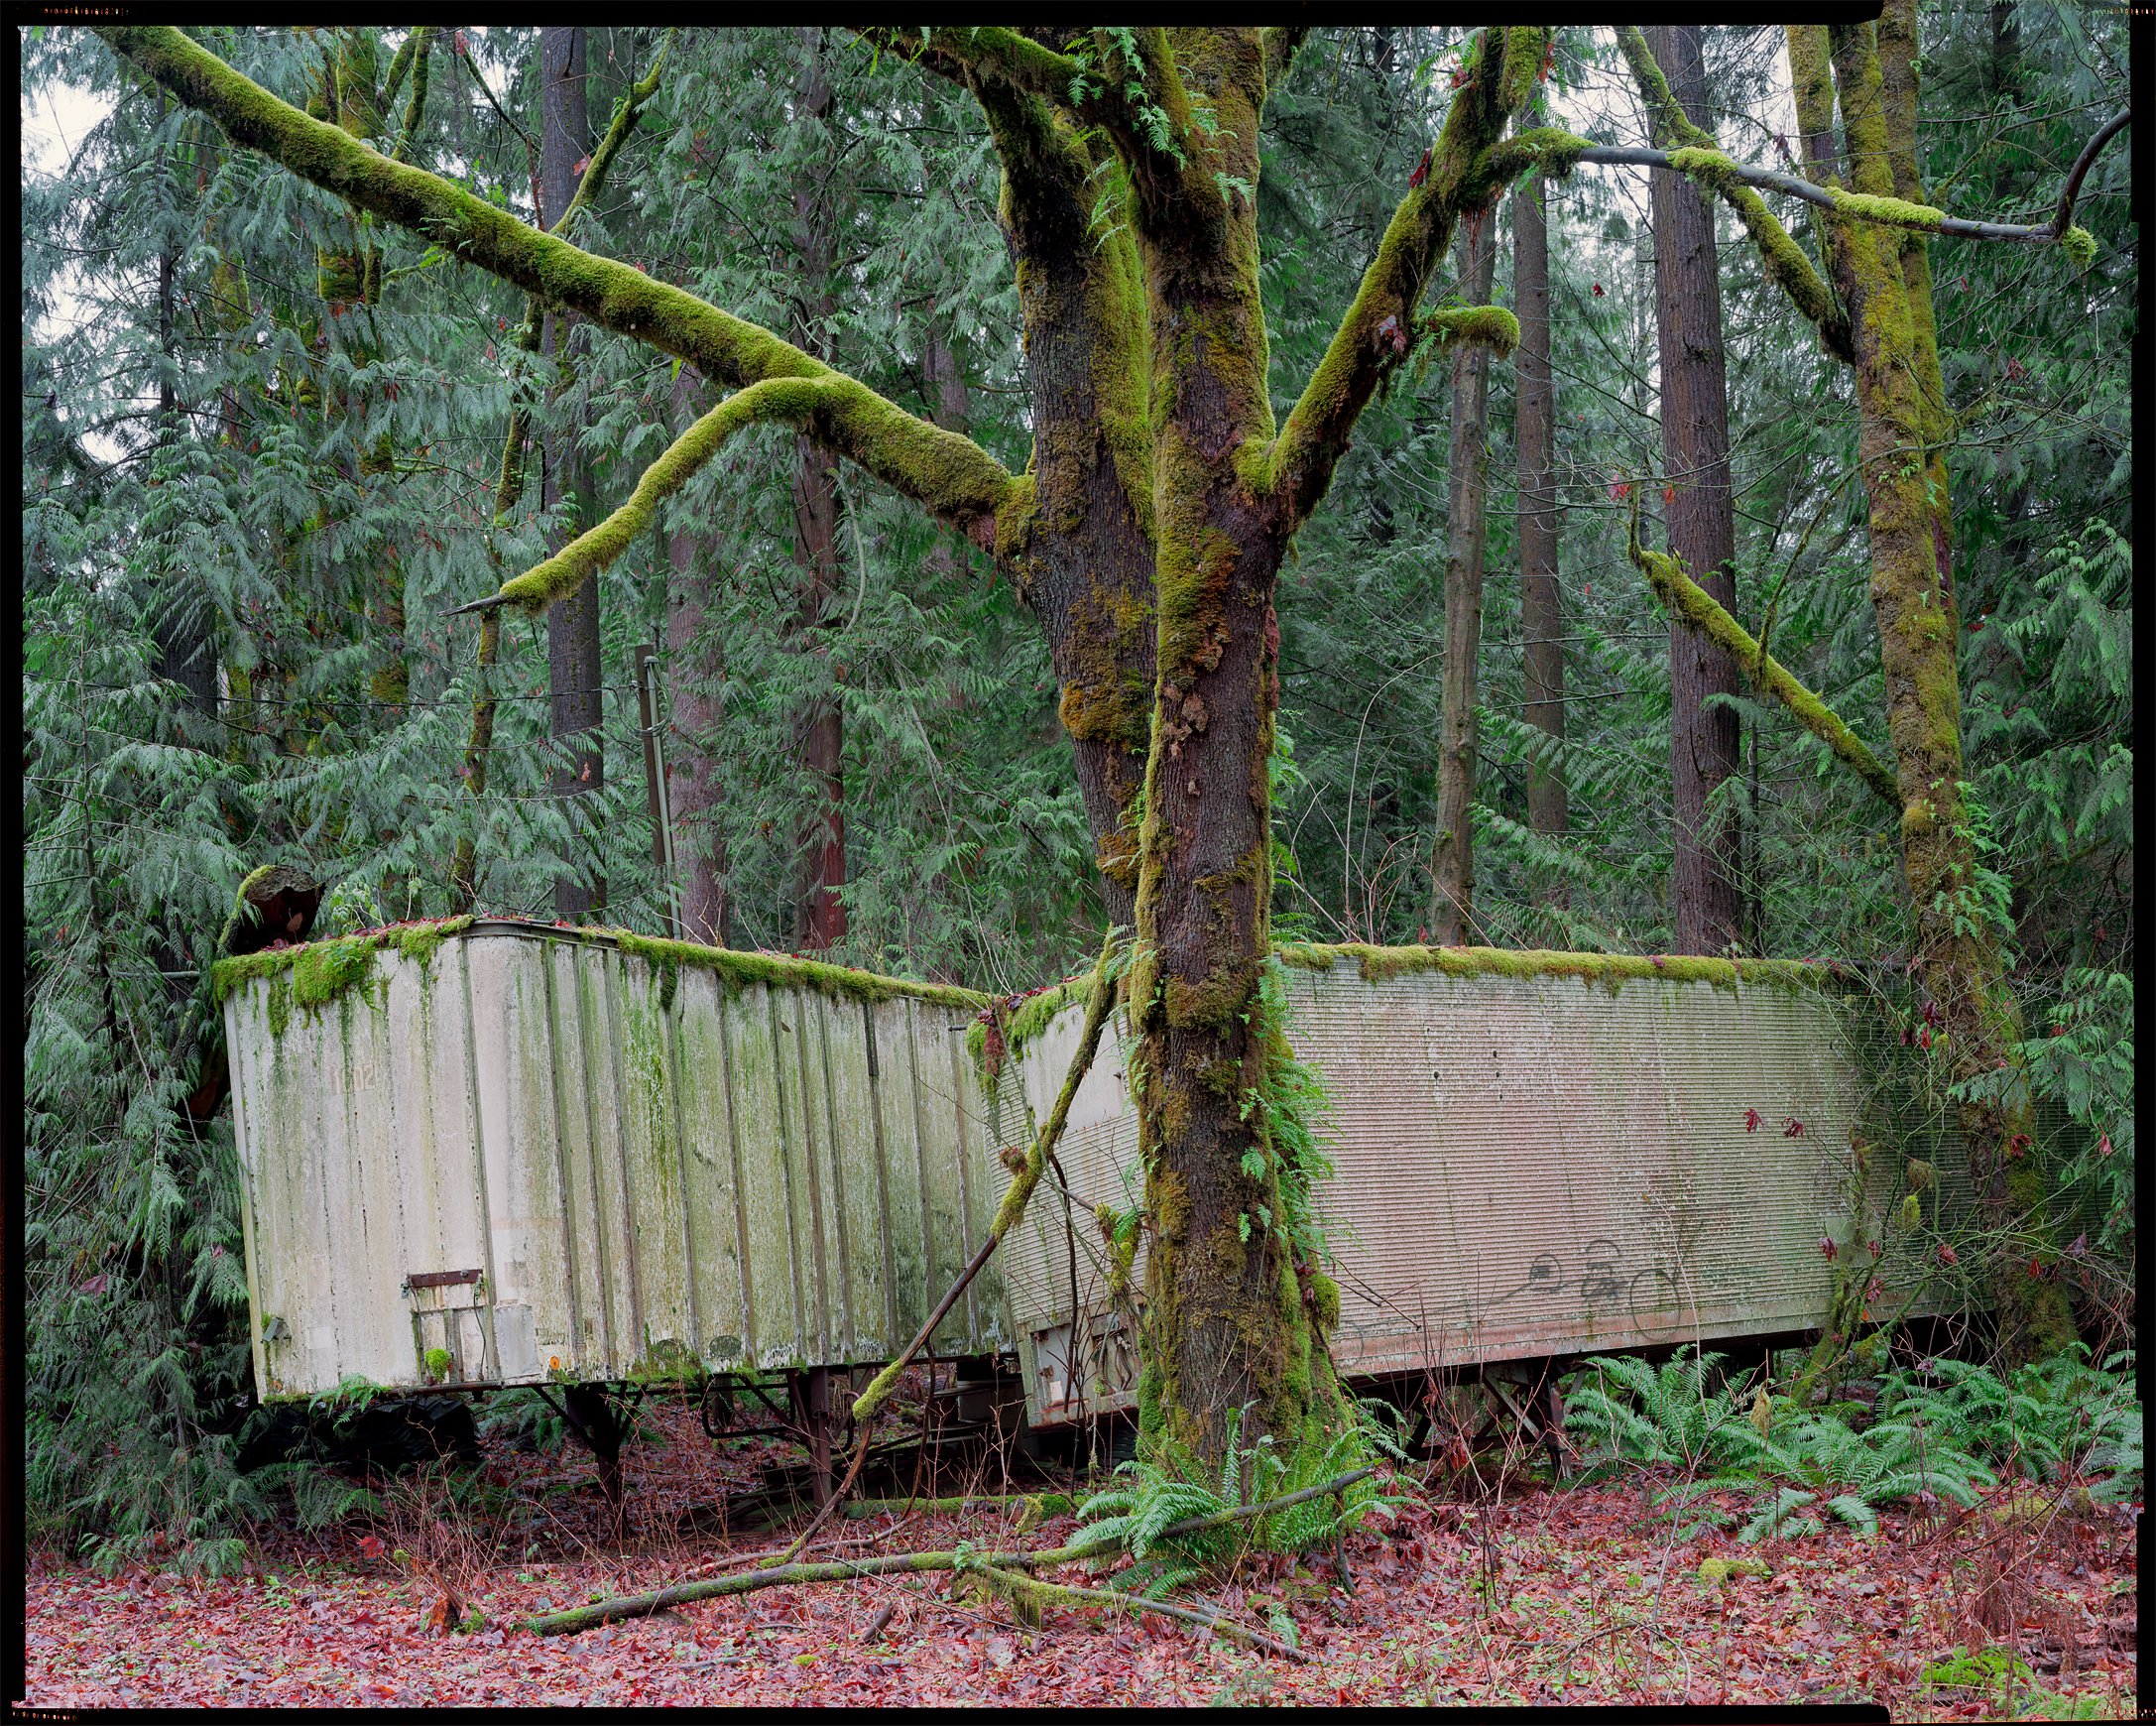   Lost Cargo   Washington, 2020 . Kodak Ektar 100 8x10 Large Format Film  